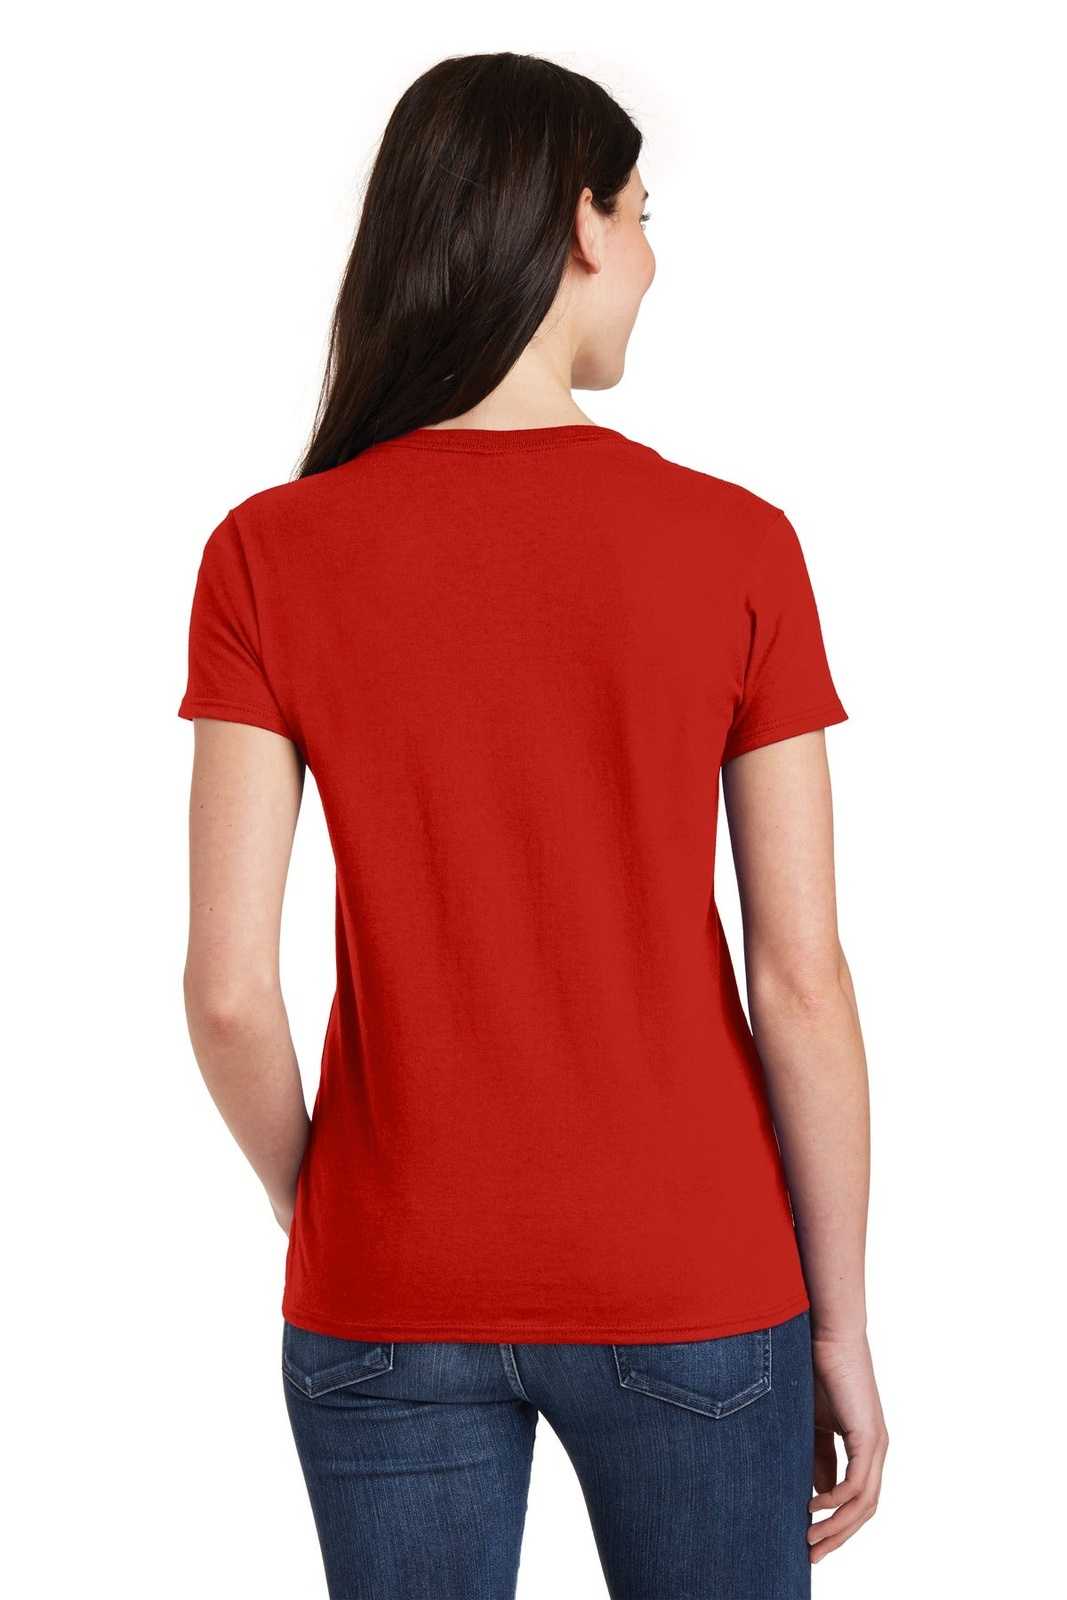 Gildan 5V00L Ladies Heavy Cotton 100% Cotton V-Neck T-Shirt - Red - HIT a Double